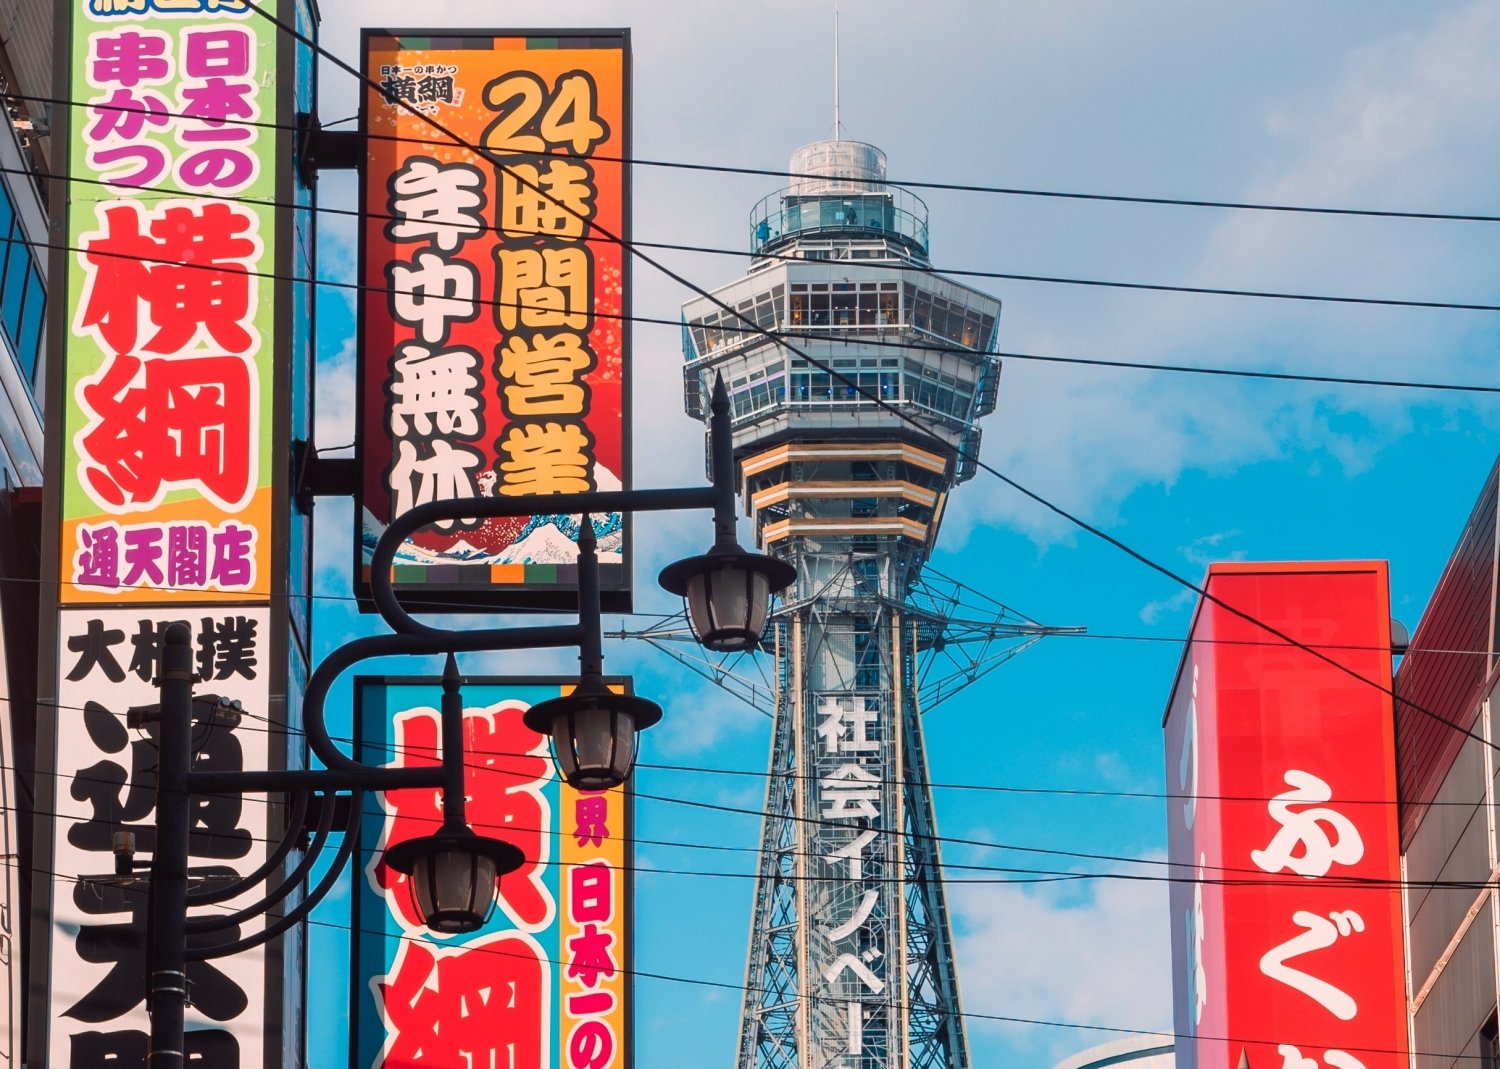 Dove dormire a Osaka: le migliori zone dove alloggiare e prendere un albergo